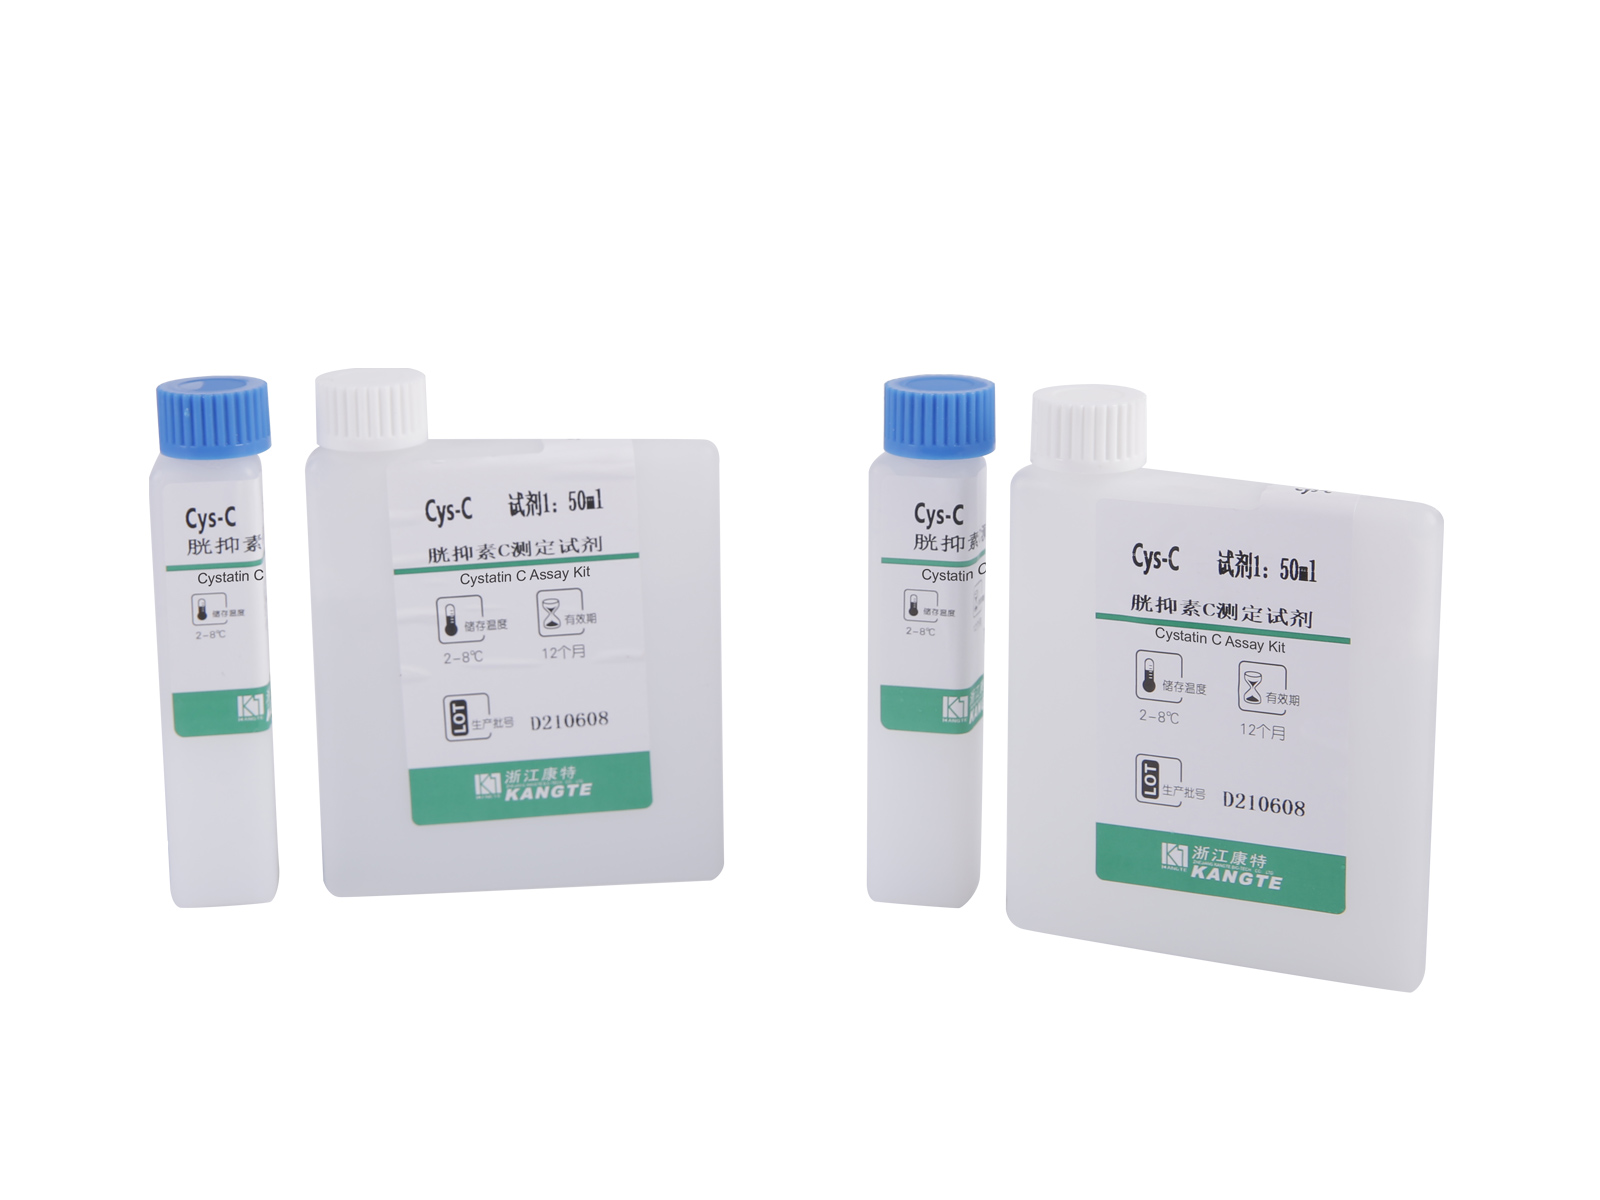 【Cys-C】 Kit de testare a cistatinei C (metoda imunoturbidimetrică îmbunătățită cu latex)